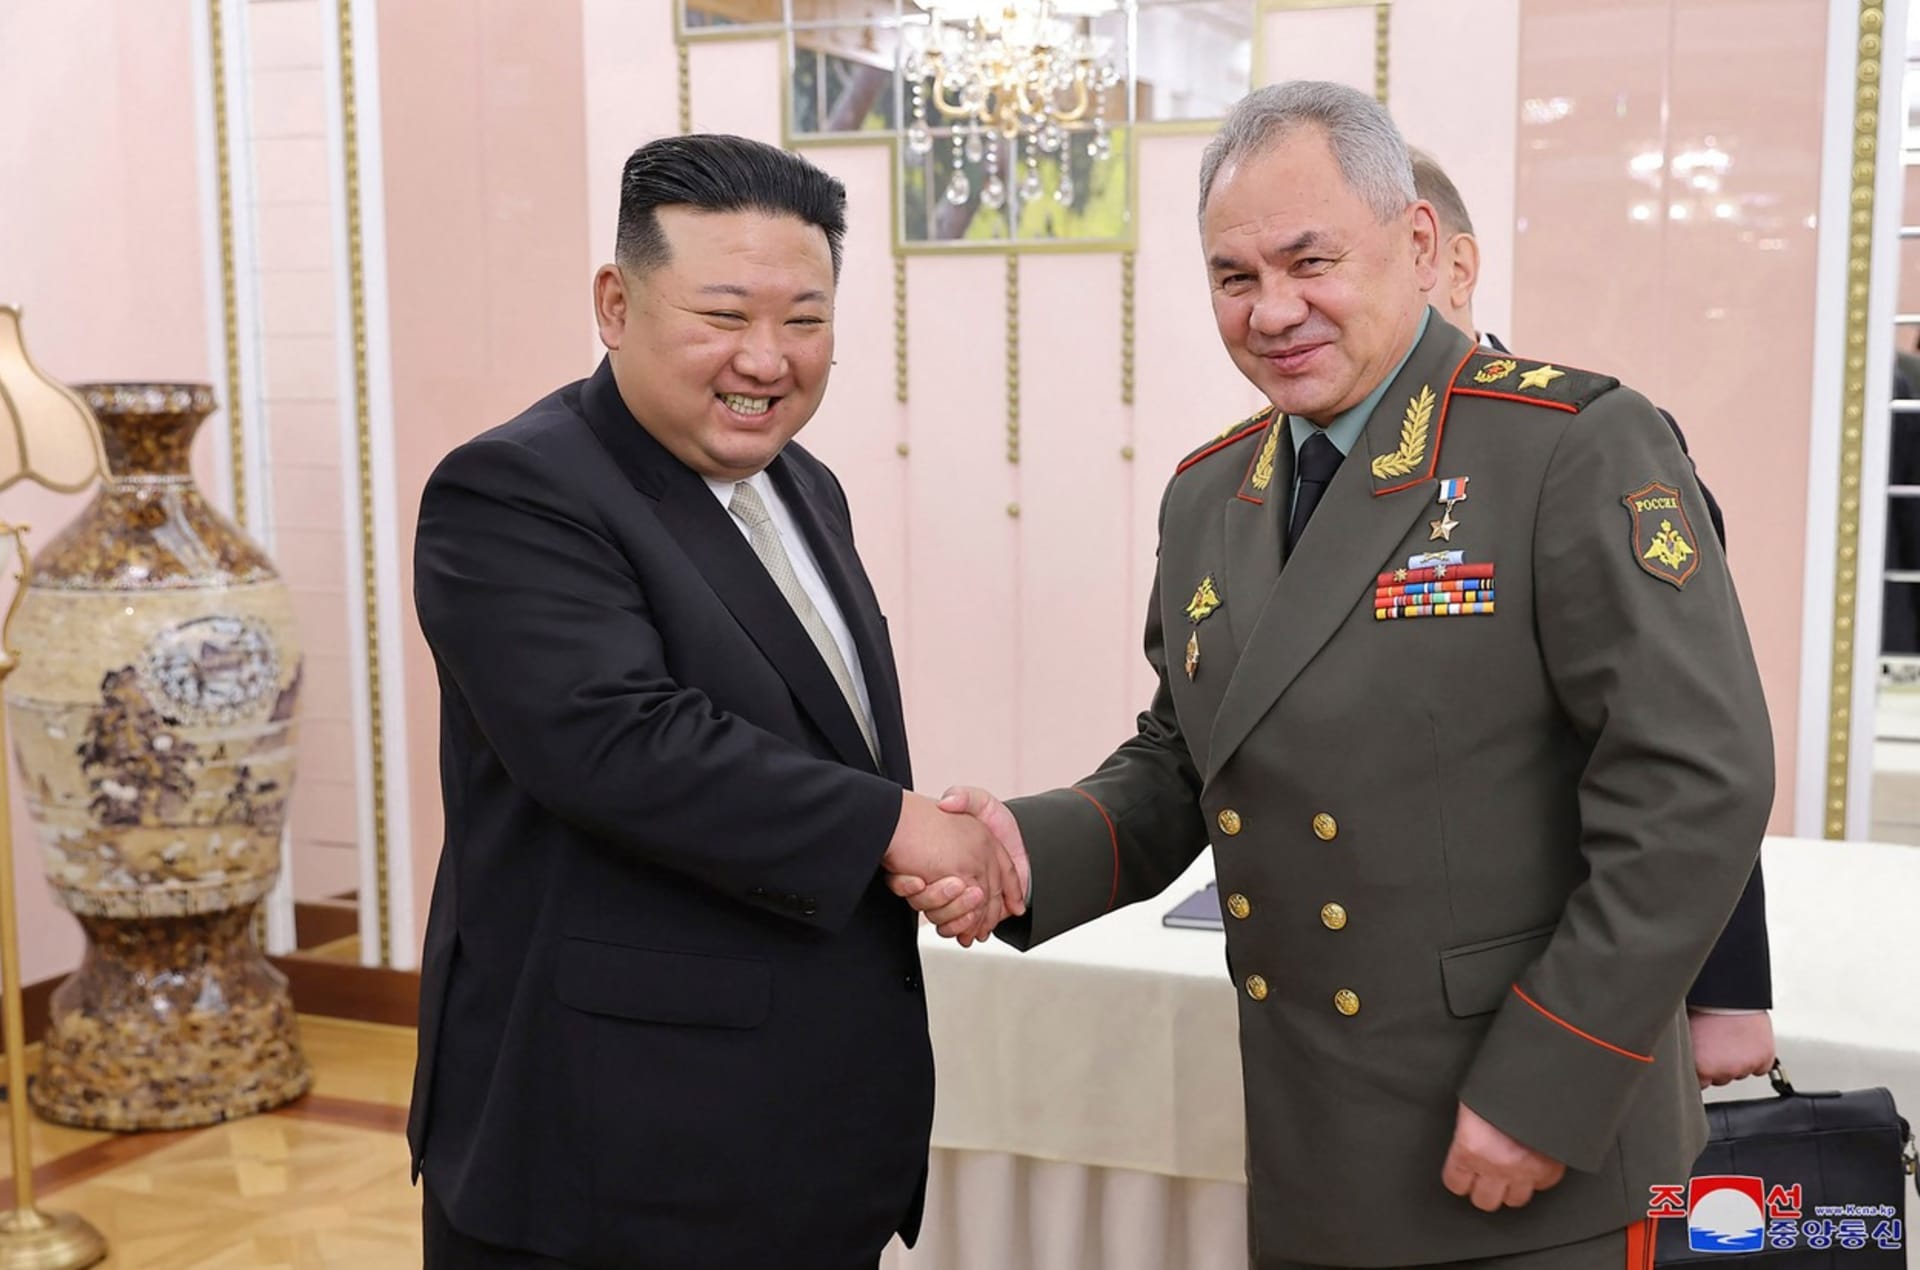 Severokorejský vůdce Kim Čong-un jednal s ruským ministrem obrany